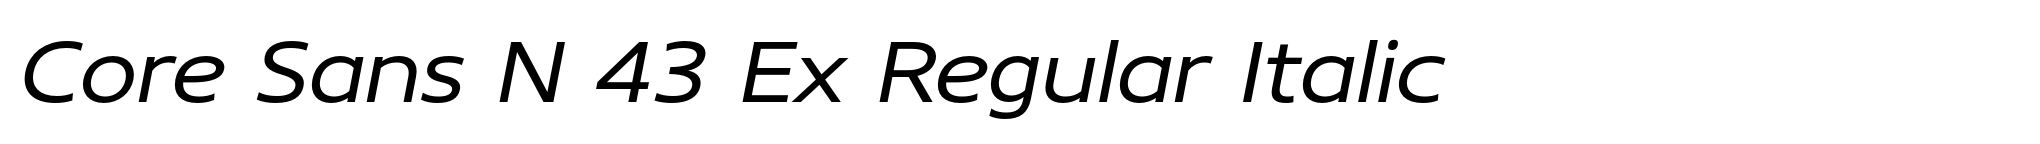 Core Sans N 43 Ex Regular Italic image